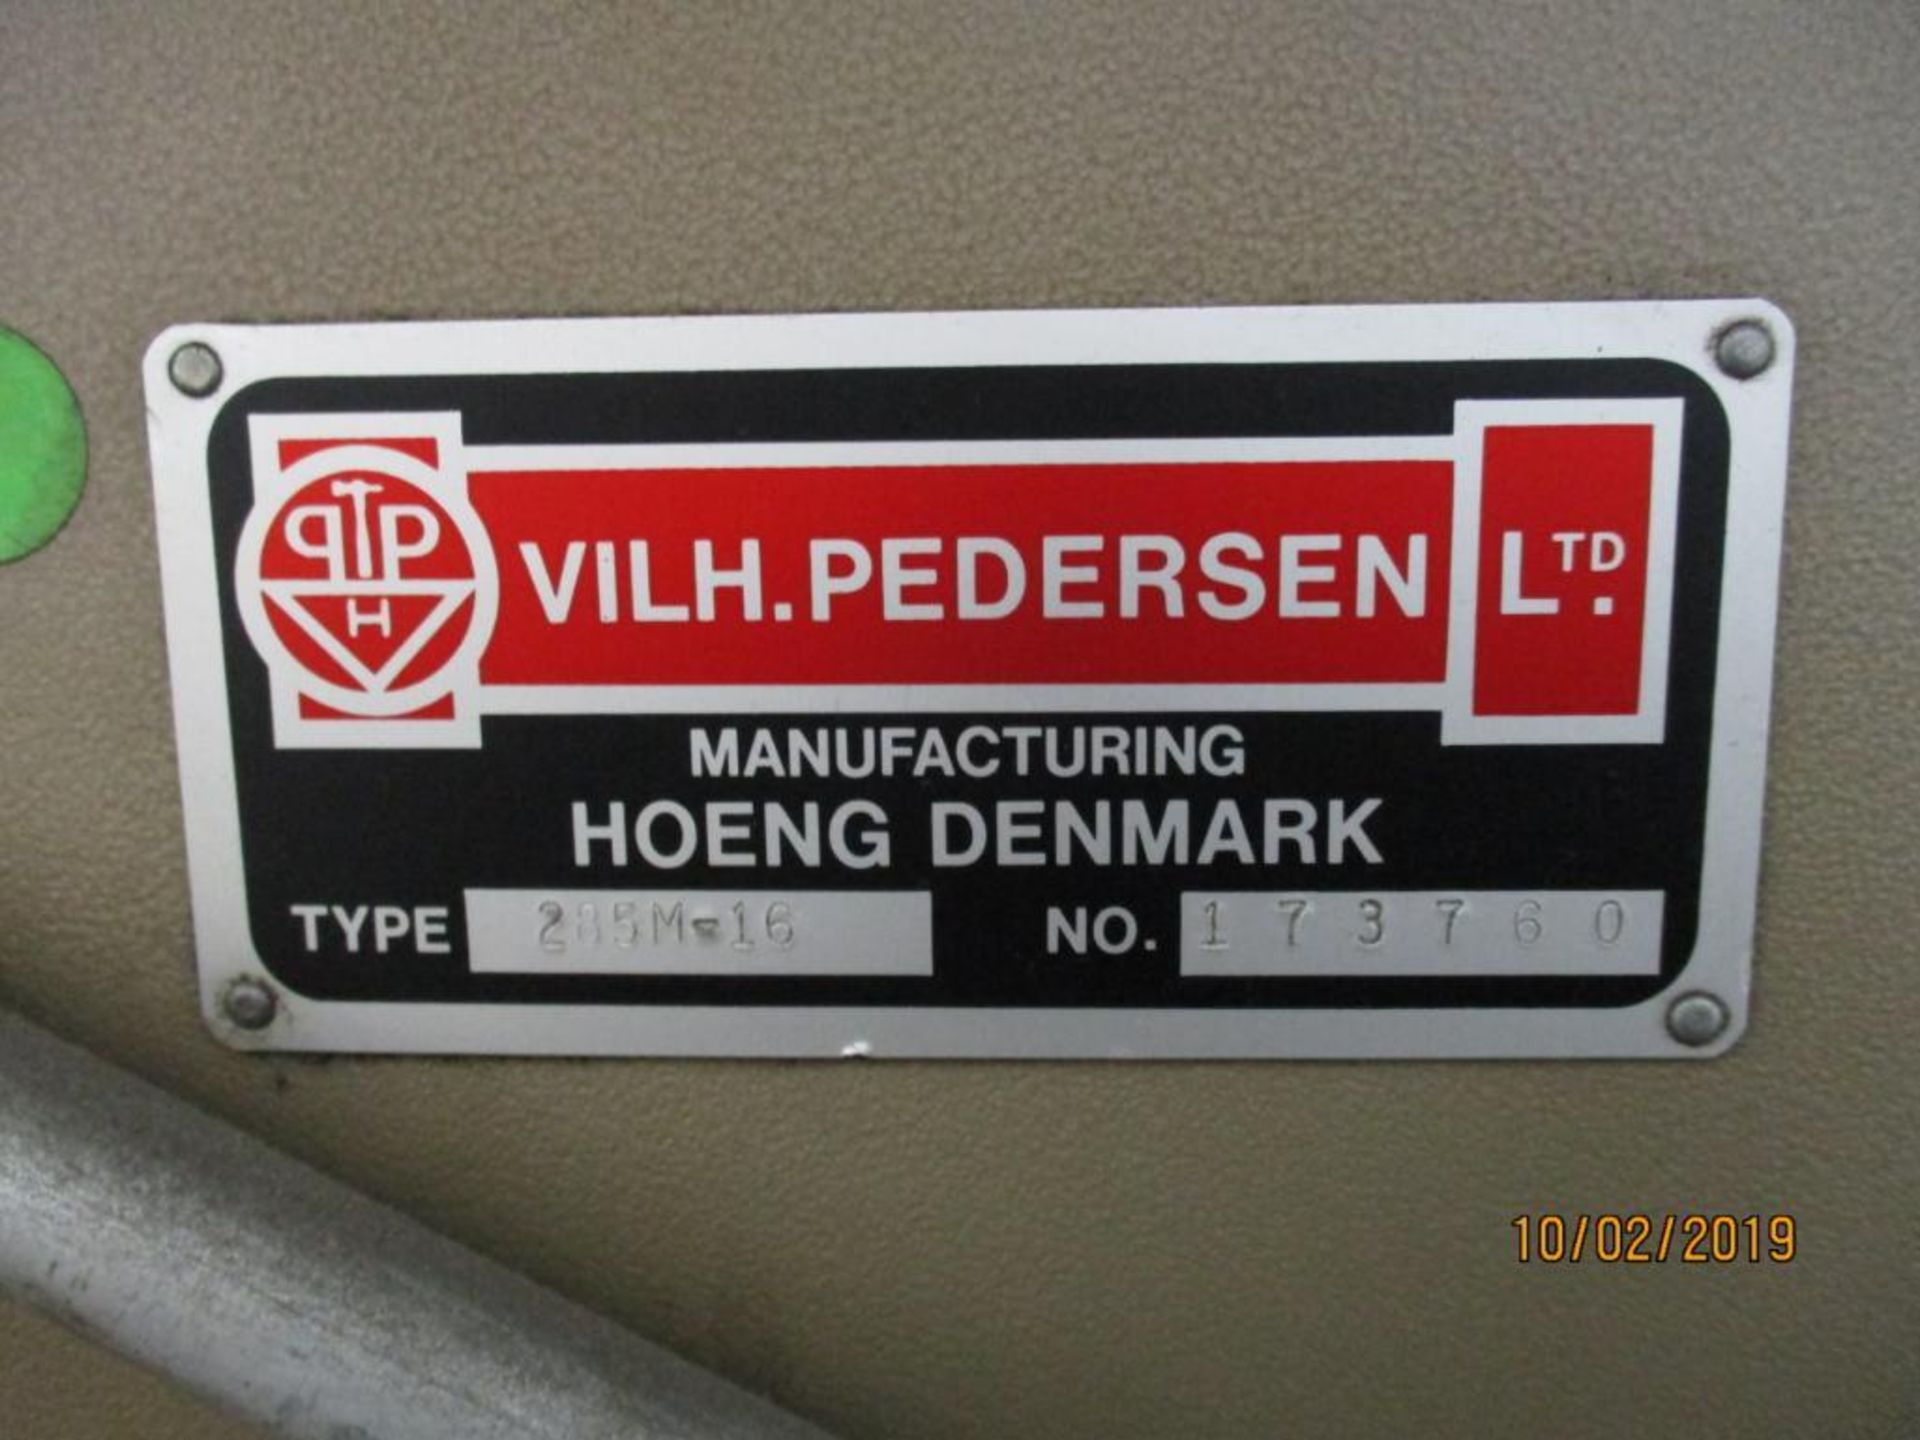 Pedersen 5' 285M-16 Hydraulic Die Cutting Press S/N 173760, 64" X 5' Slide Bed - Image 5 of 5